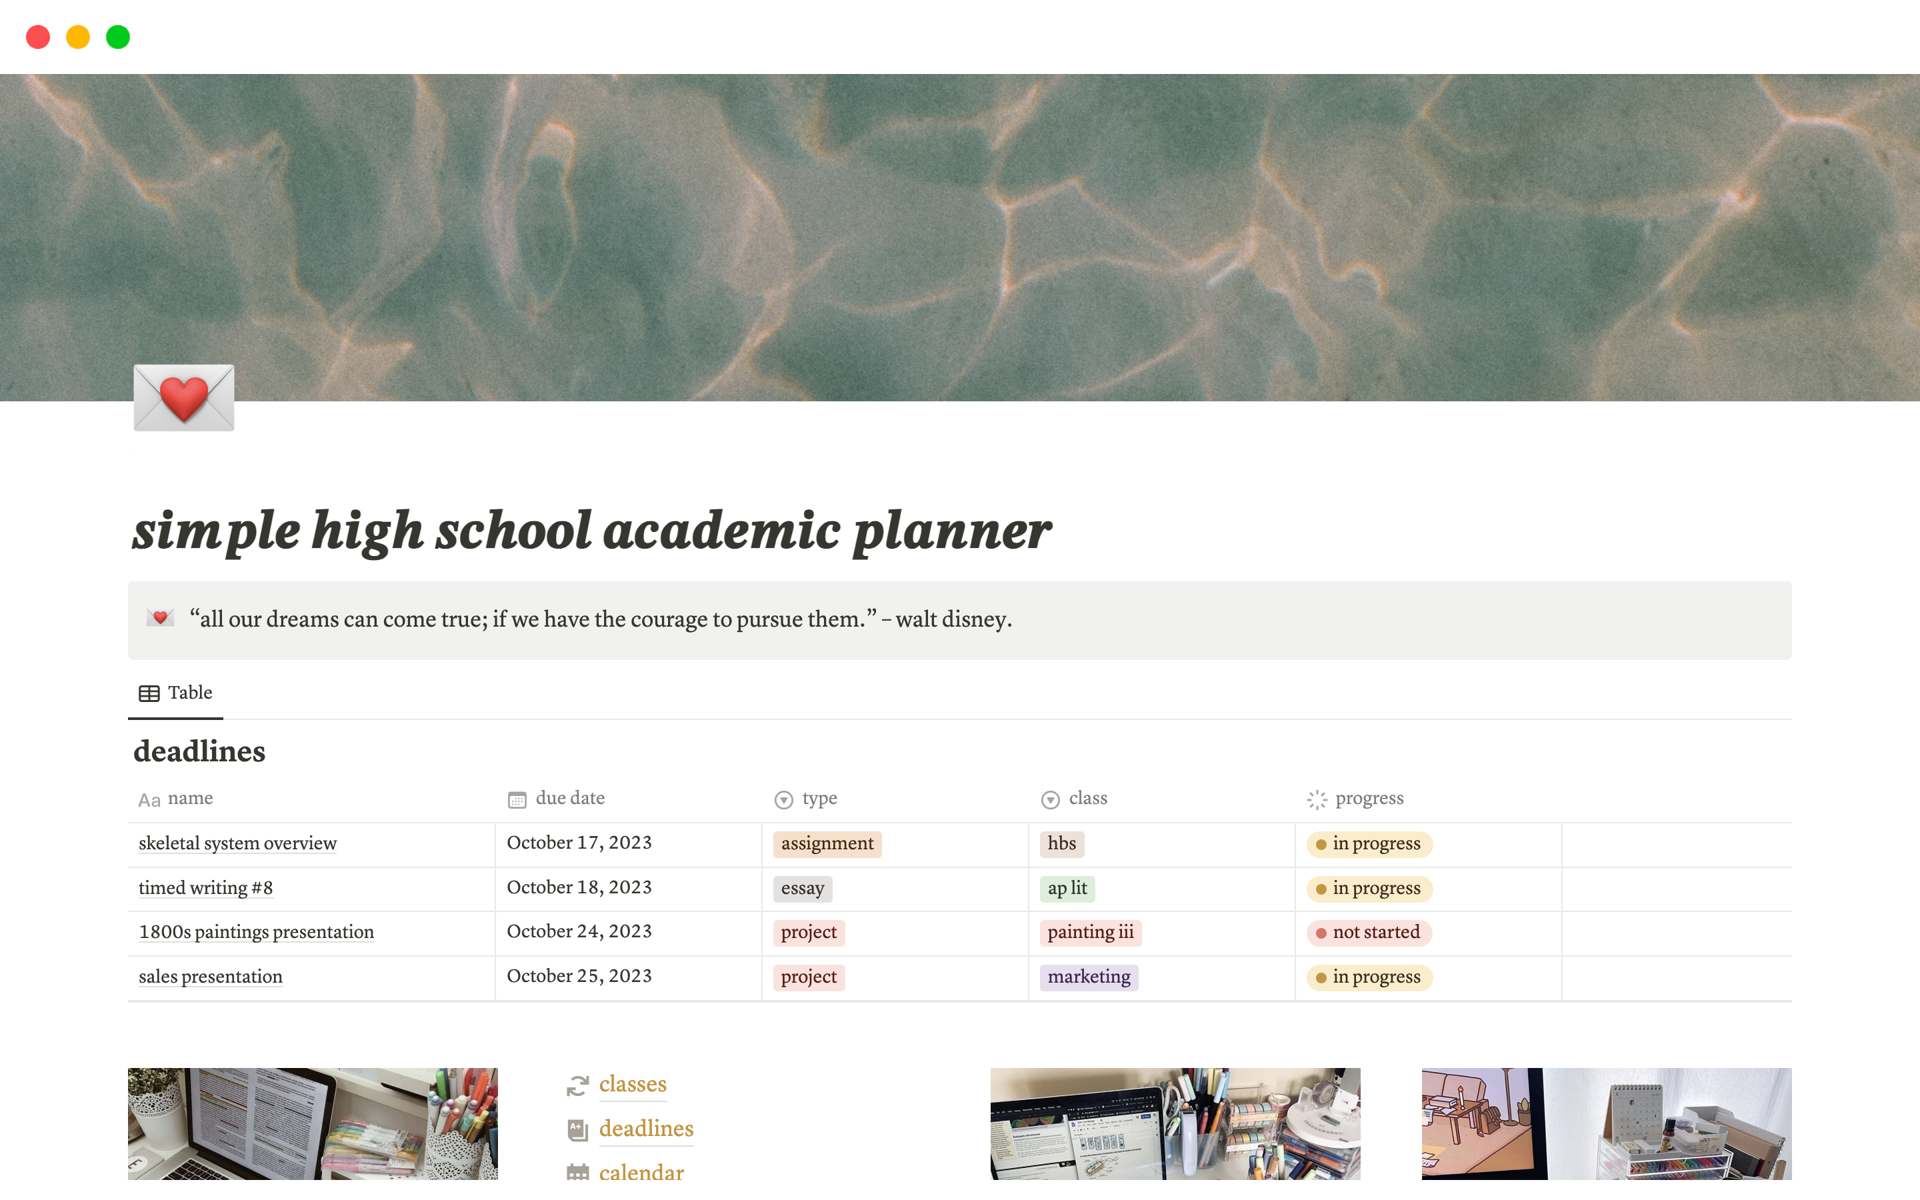 Uma prévia do modelo para simple high school academic planner